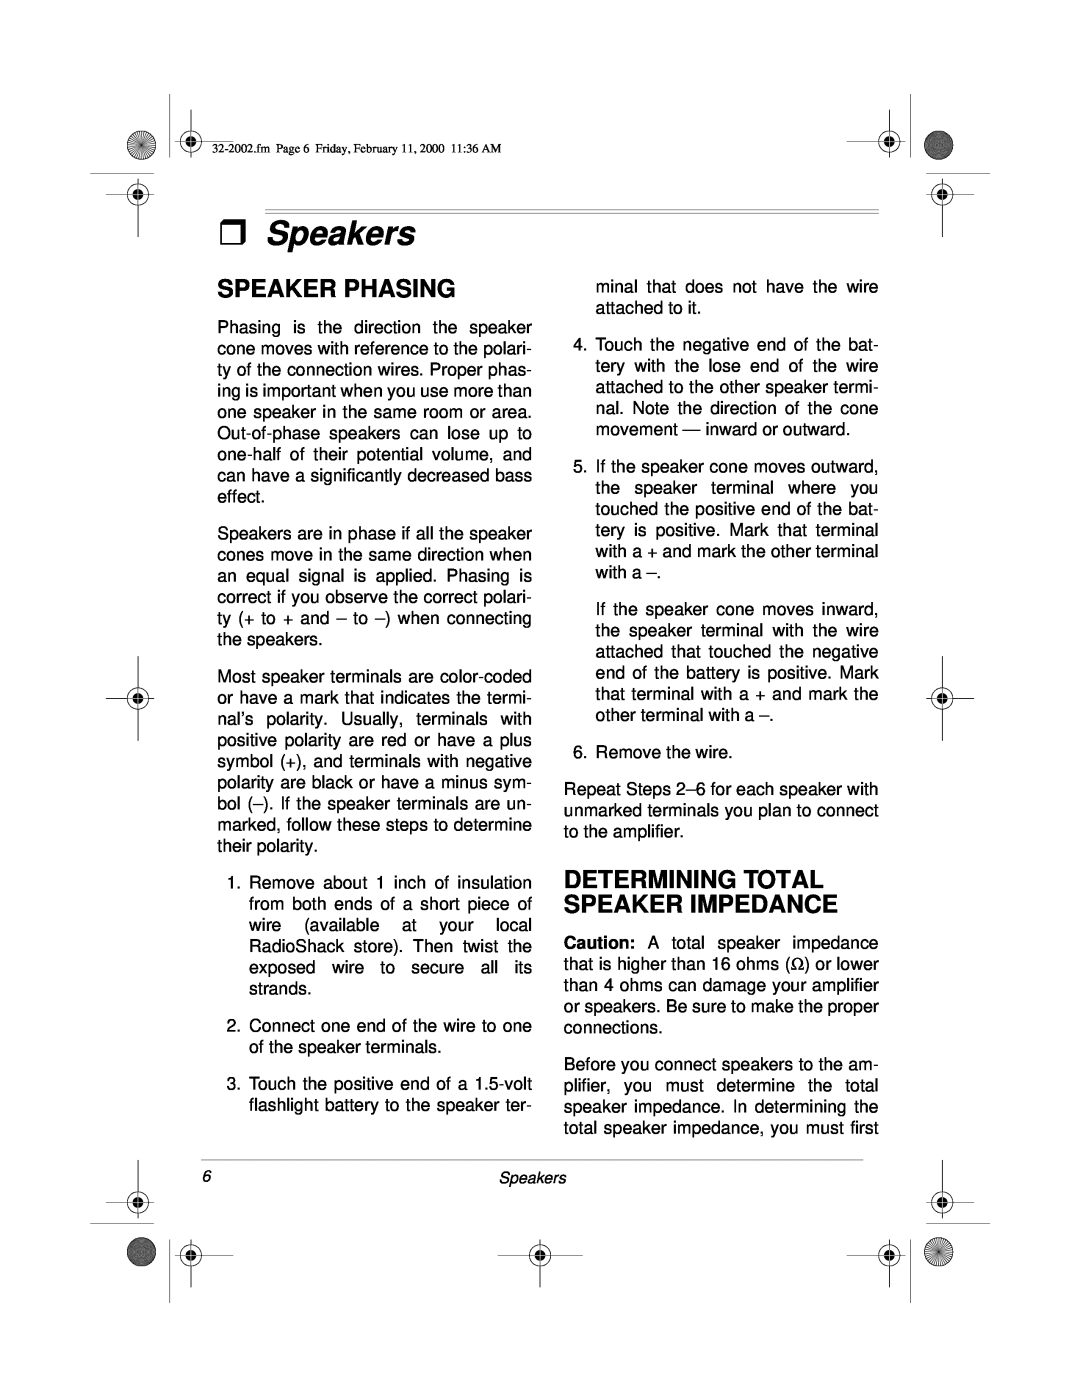 Radio Shack MPA-50 owner manual ˆSpeakers, Speaker Phasing, Determining Total Speaker Impedance 